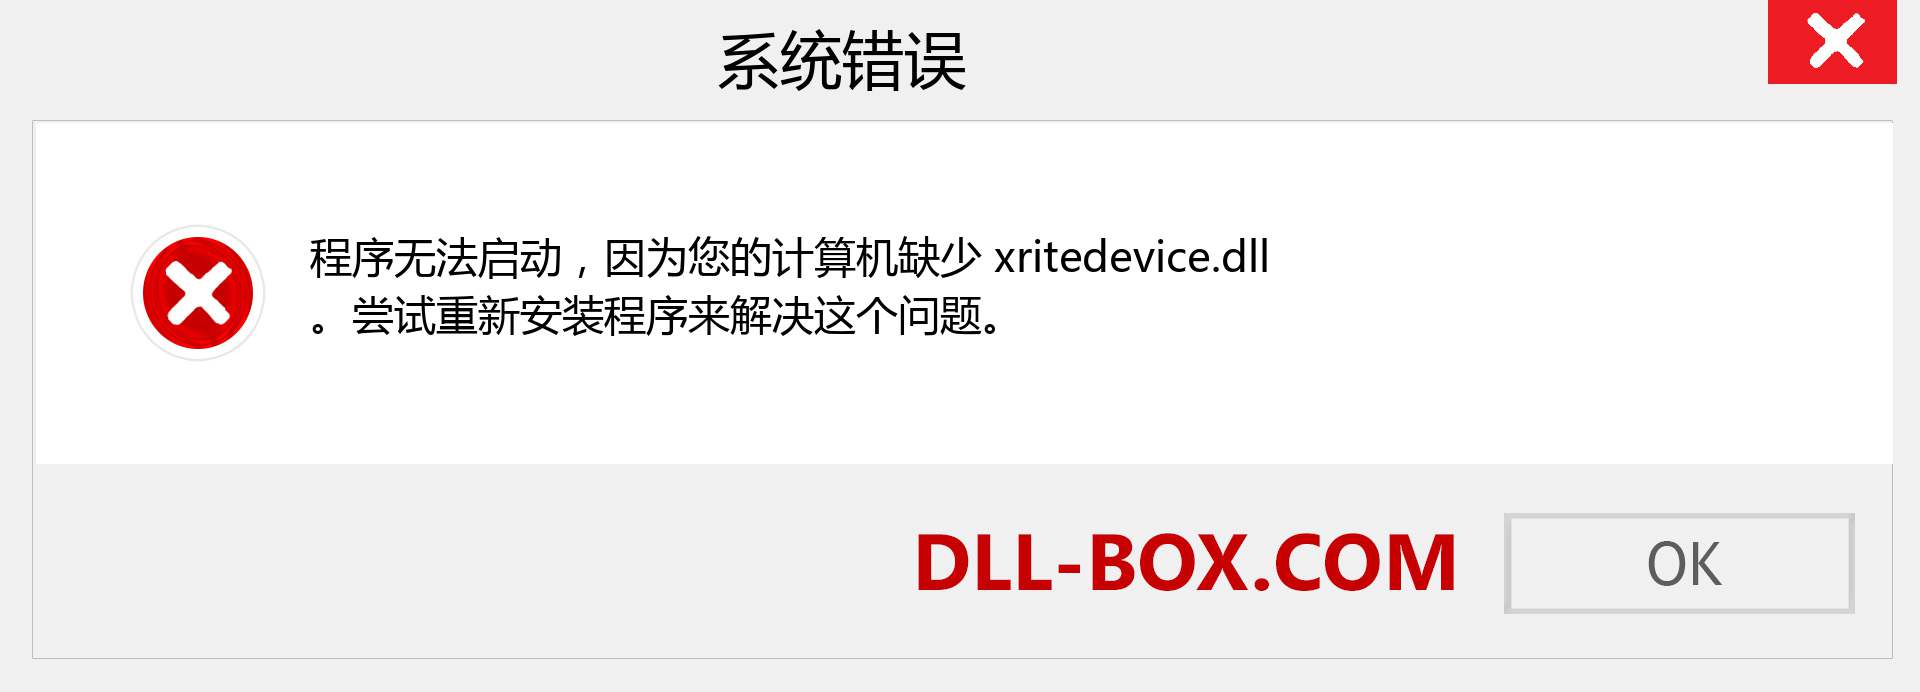 xritedevice.dll 文件丢失？。 适用于 Windows 7、8、10 的下载 - 修复 Windows、照片、图像上的 xritedevice dll 丢失错误